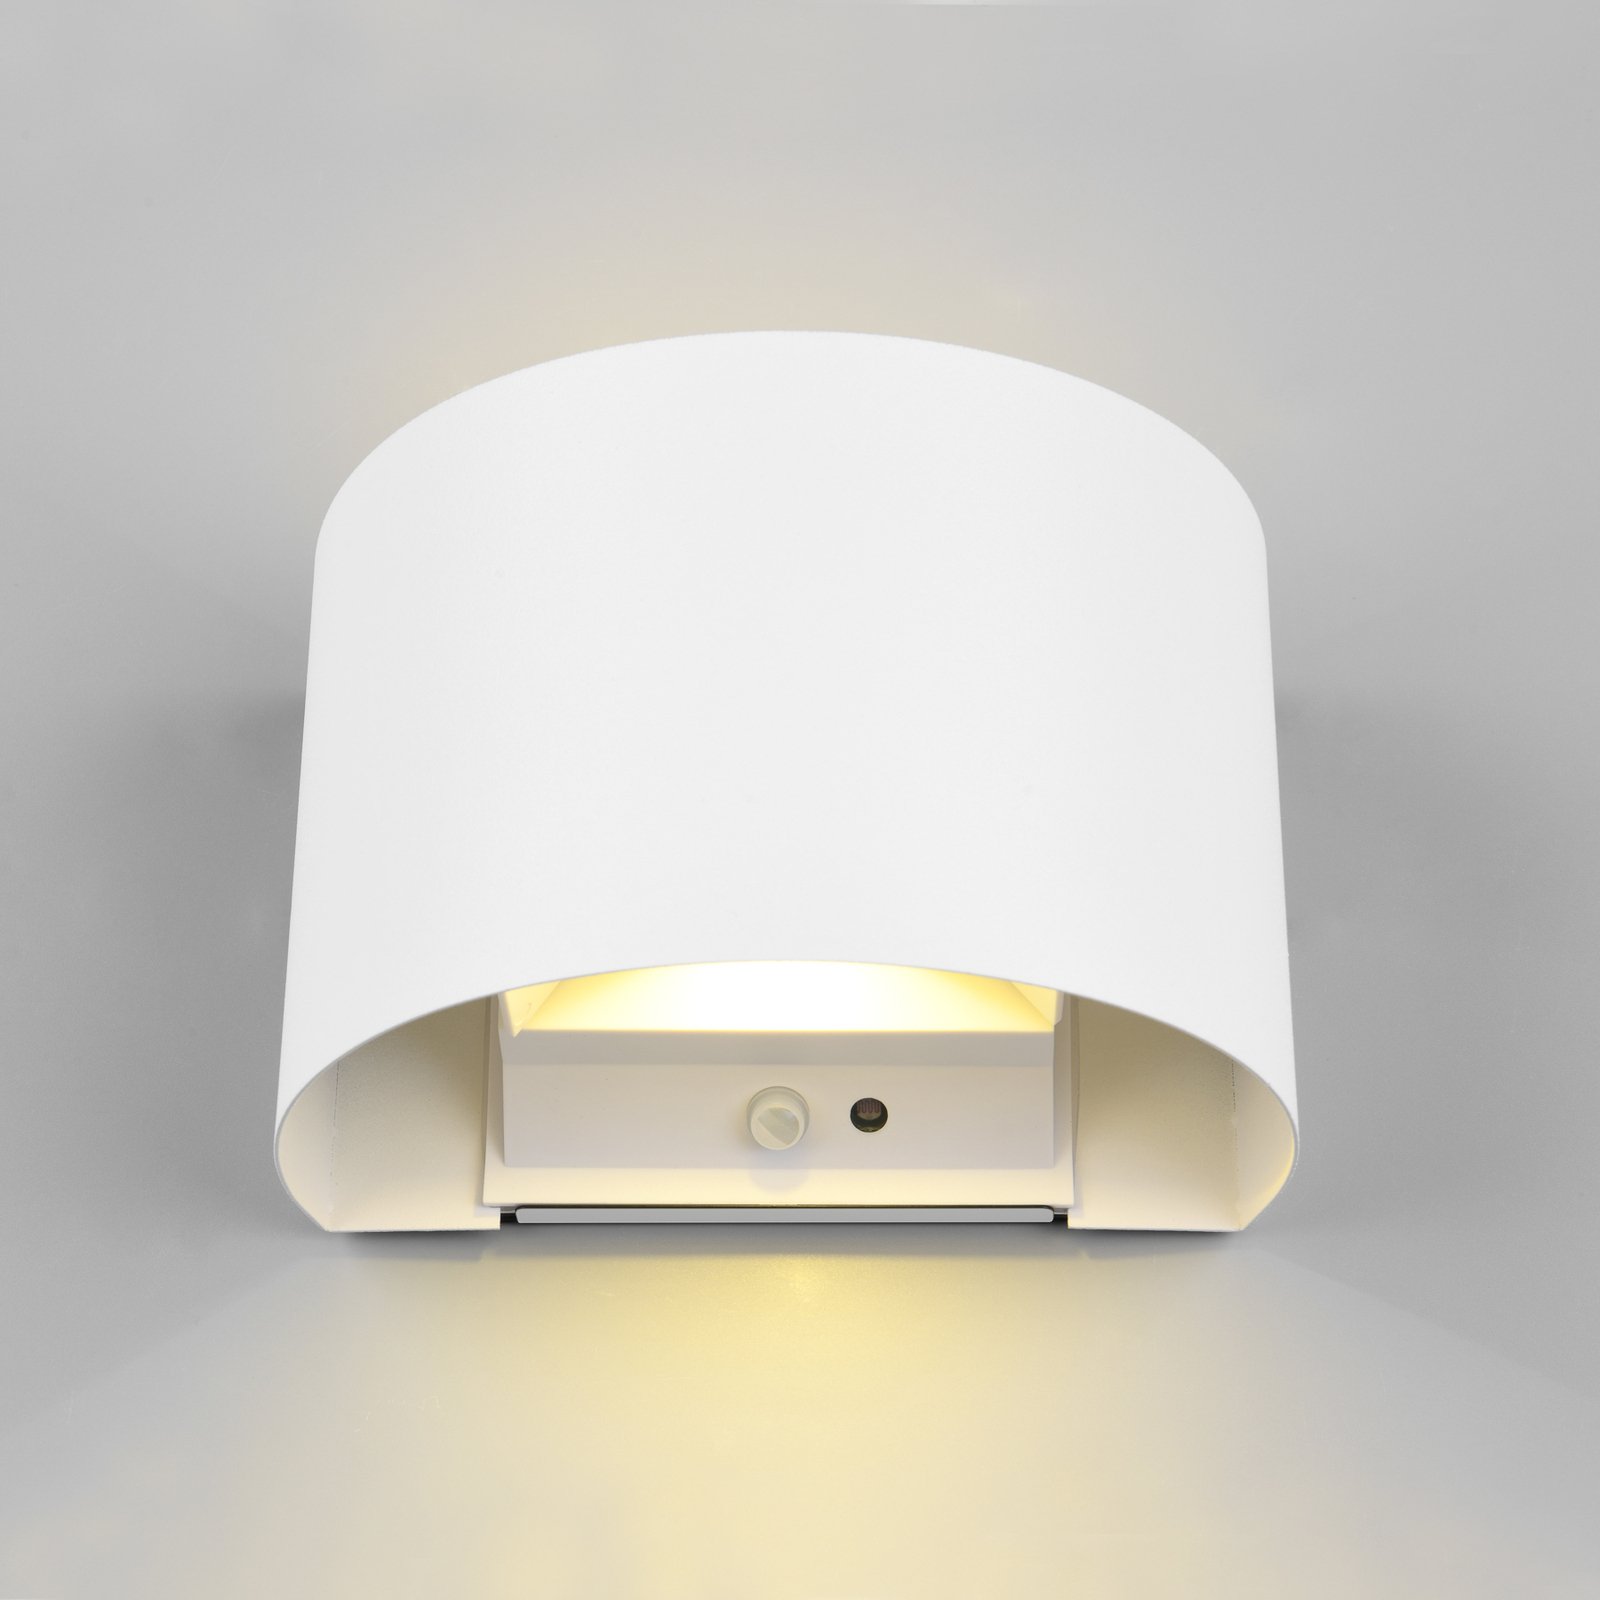 LED oppladbar utendørs vegglampe Talent, hvit, bredde 16 cm, sensor